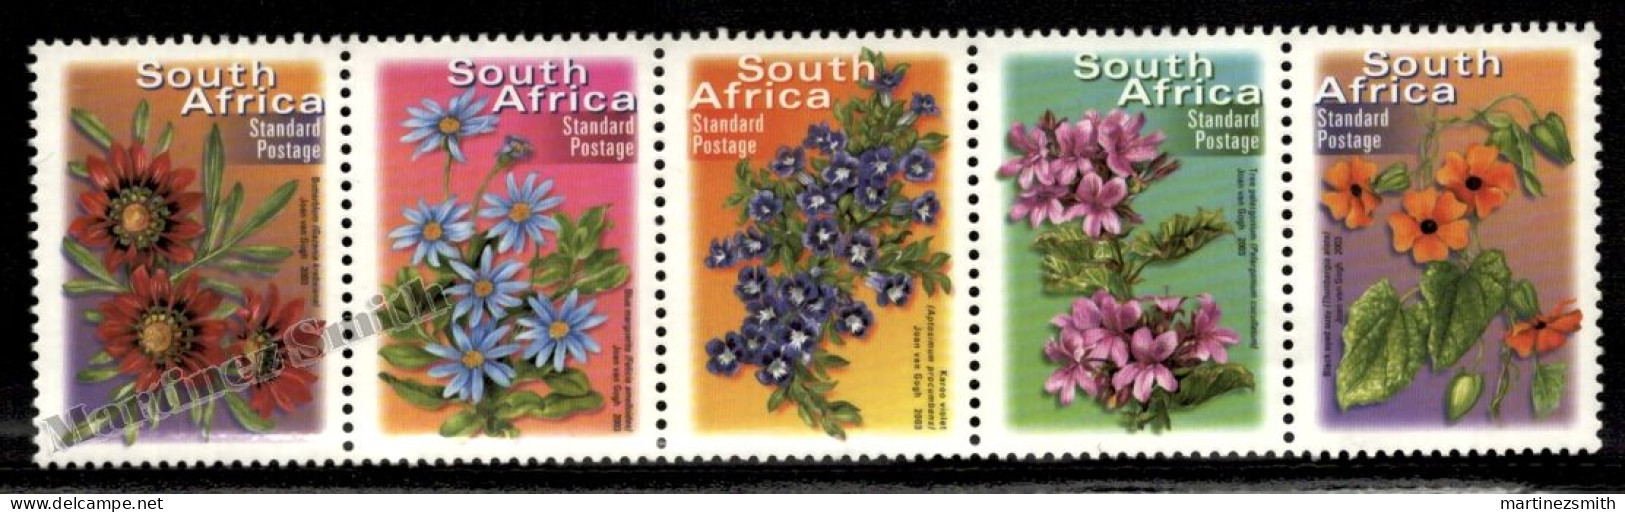 South Africa - Afrique Du Sud - Africa Sur 2001 Yvert  1159 - 63 -Definitive, Flowers - 2007 Reprint - MNH - Nuevos